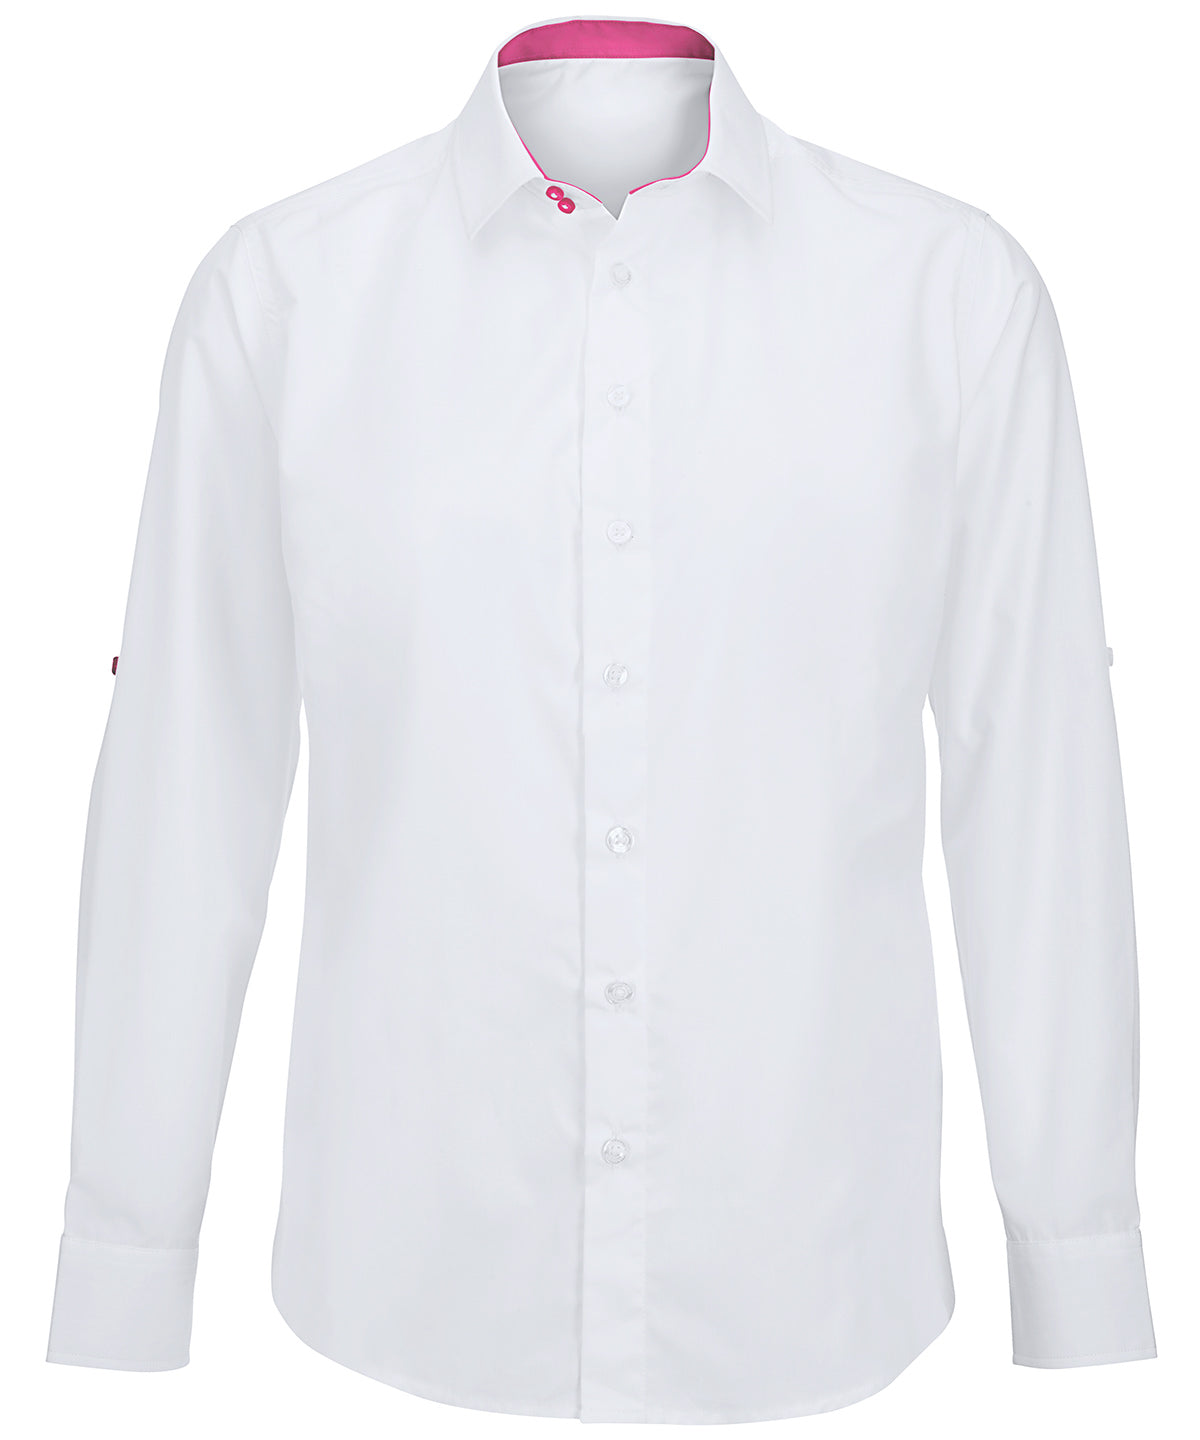 Bolir - Men's White Roll-up Sleeve Shirt (NM521W)